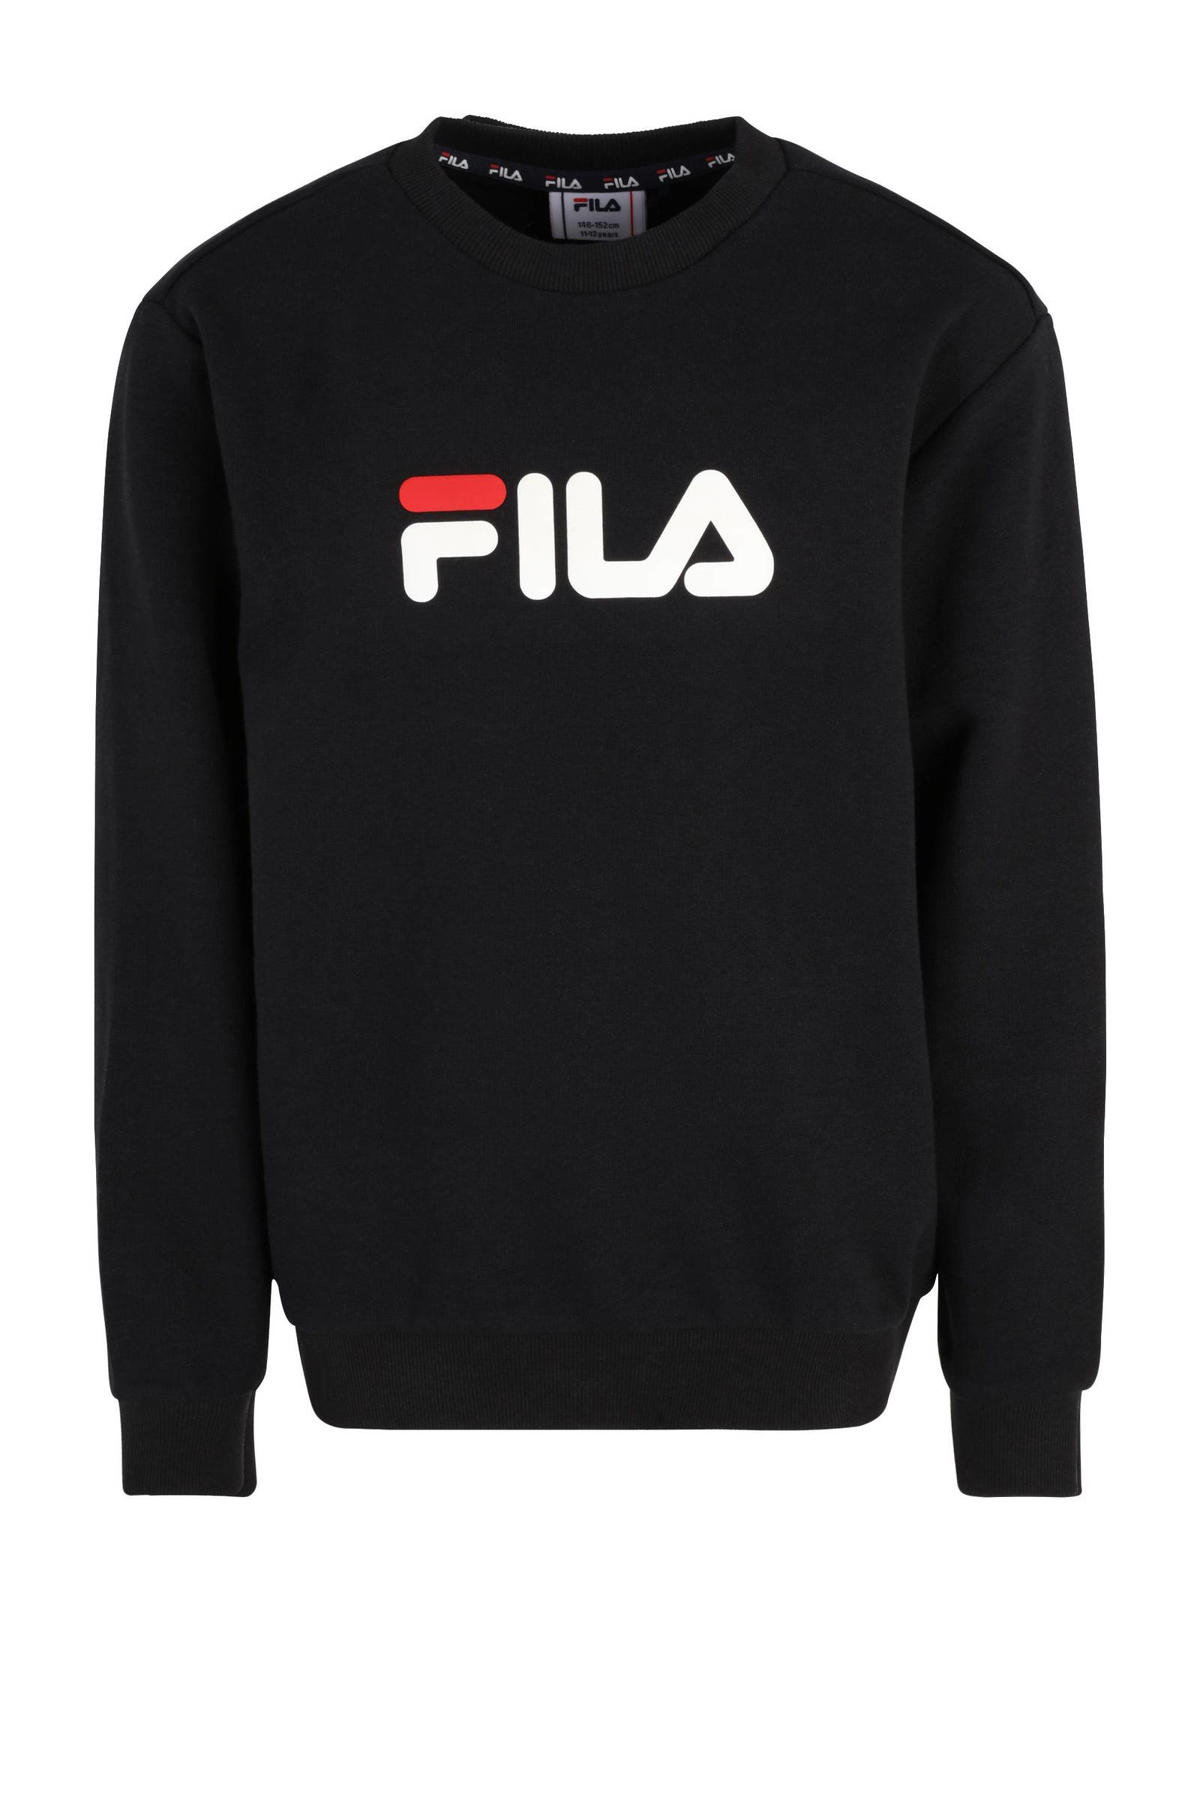 Hallo trolleybus Irrigatie Fila sweater zwart kopen? | Morgen in huis | kleertjes.com